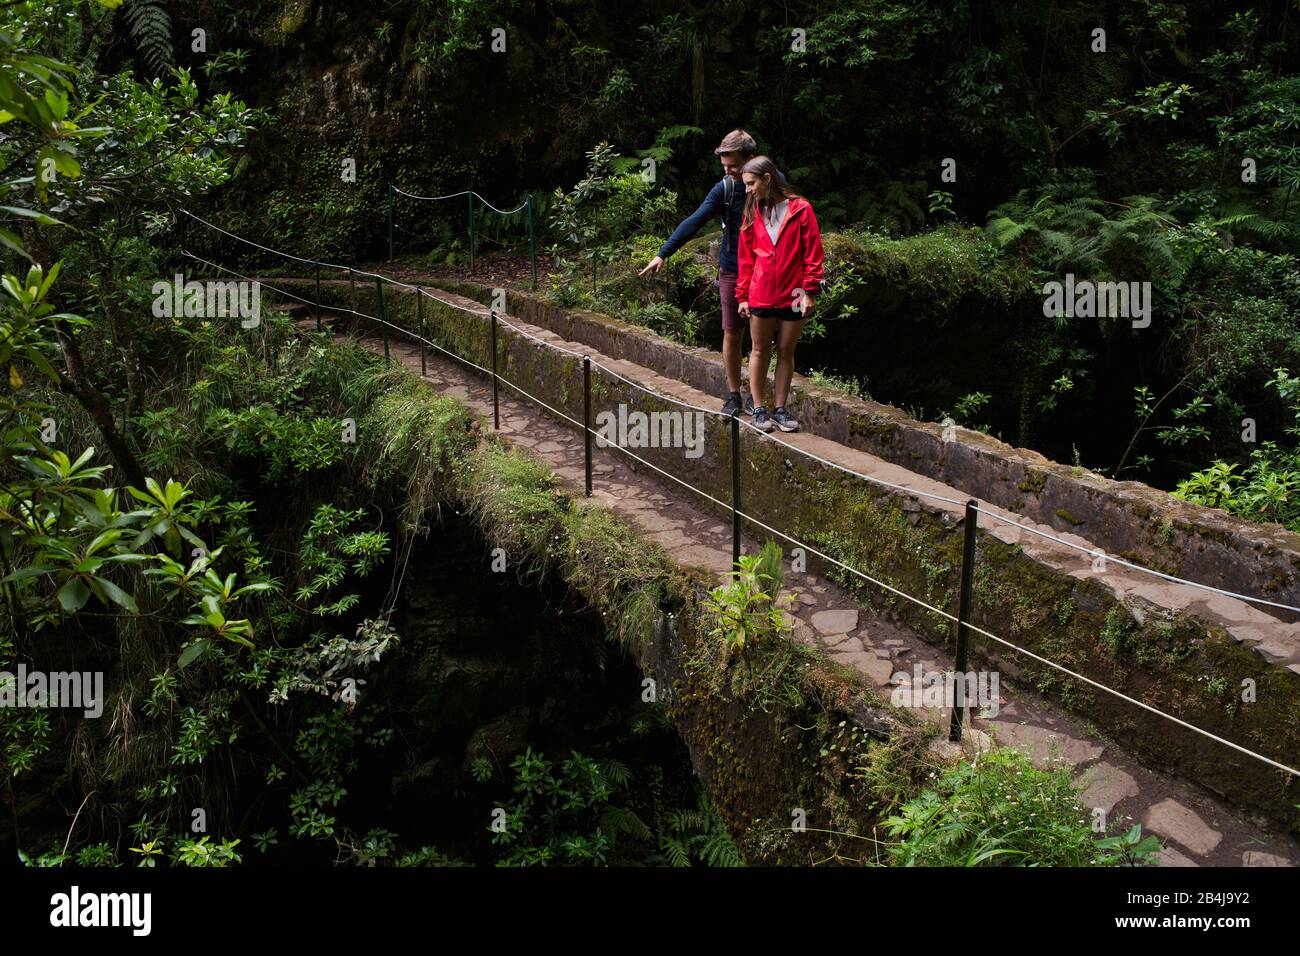 Zwei Wanderer, Paar, stehen auf Aquädukt am Wanderweg PR 9 Caldeirao Verde, Queimadas, Caldeirao do Inferno, Regenwald, entlang eines Levada, Insel Ma Stock Photo